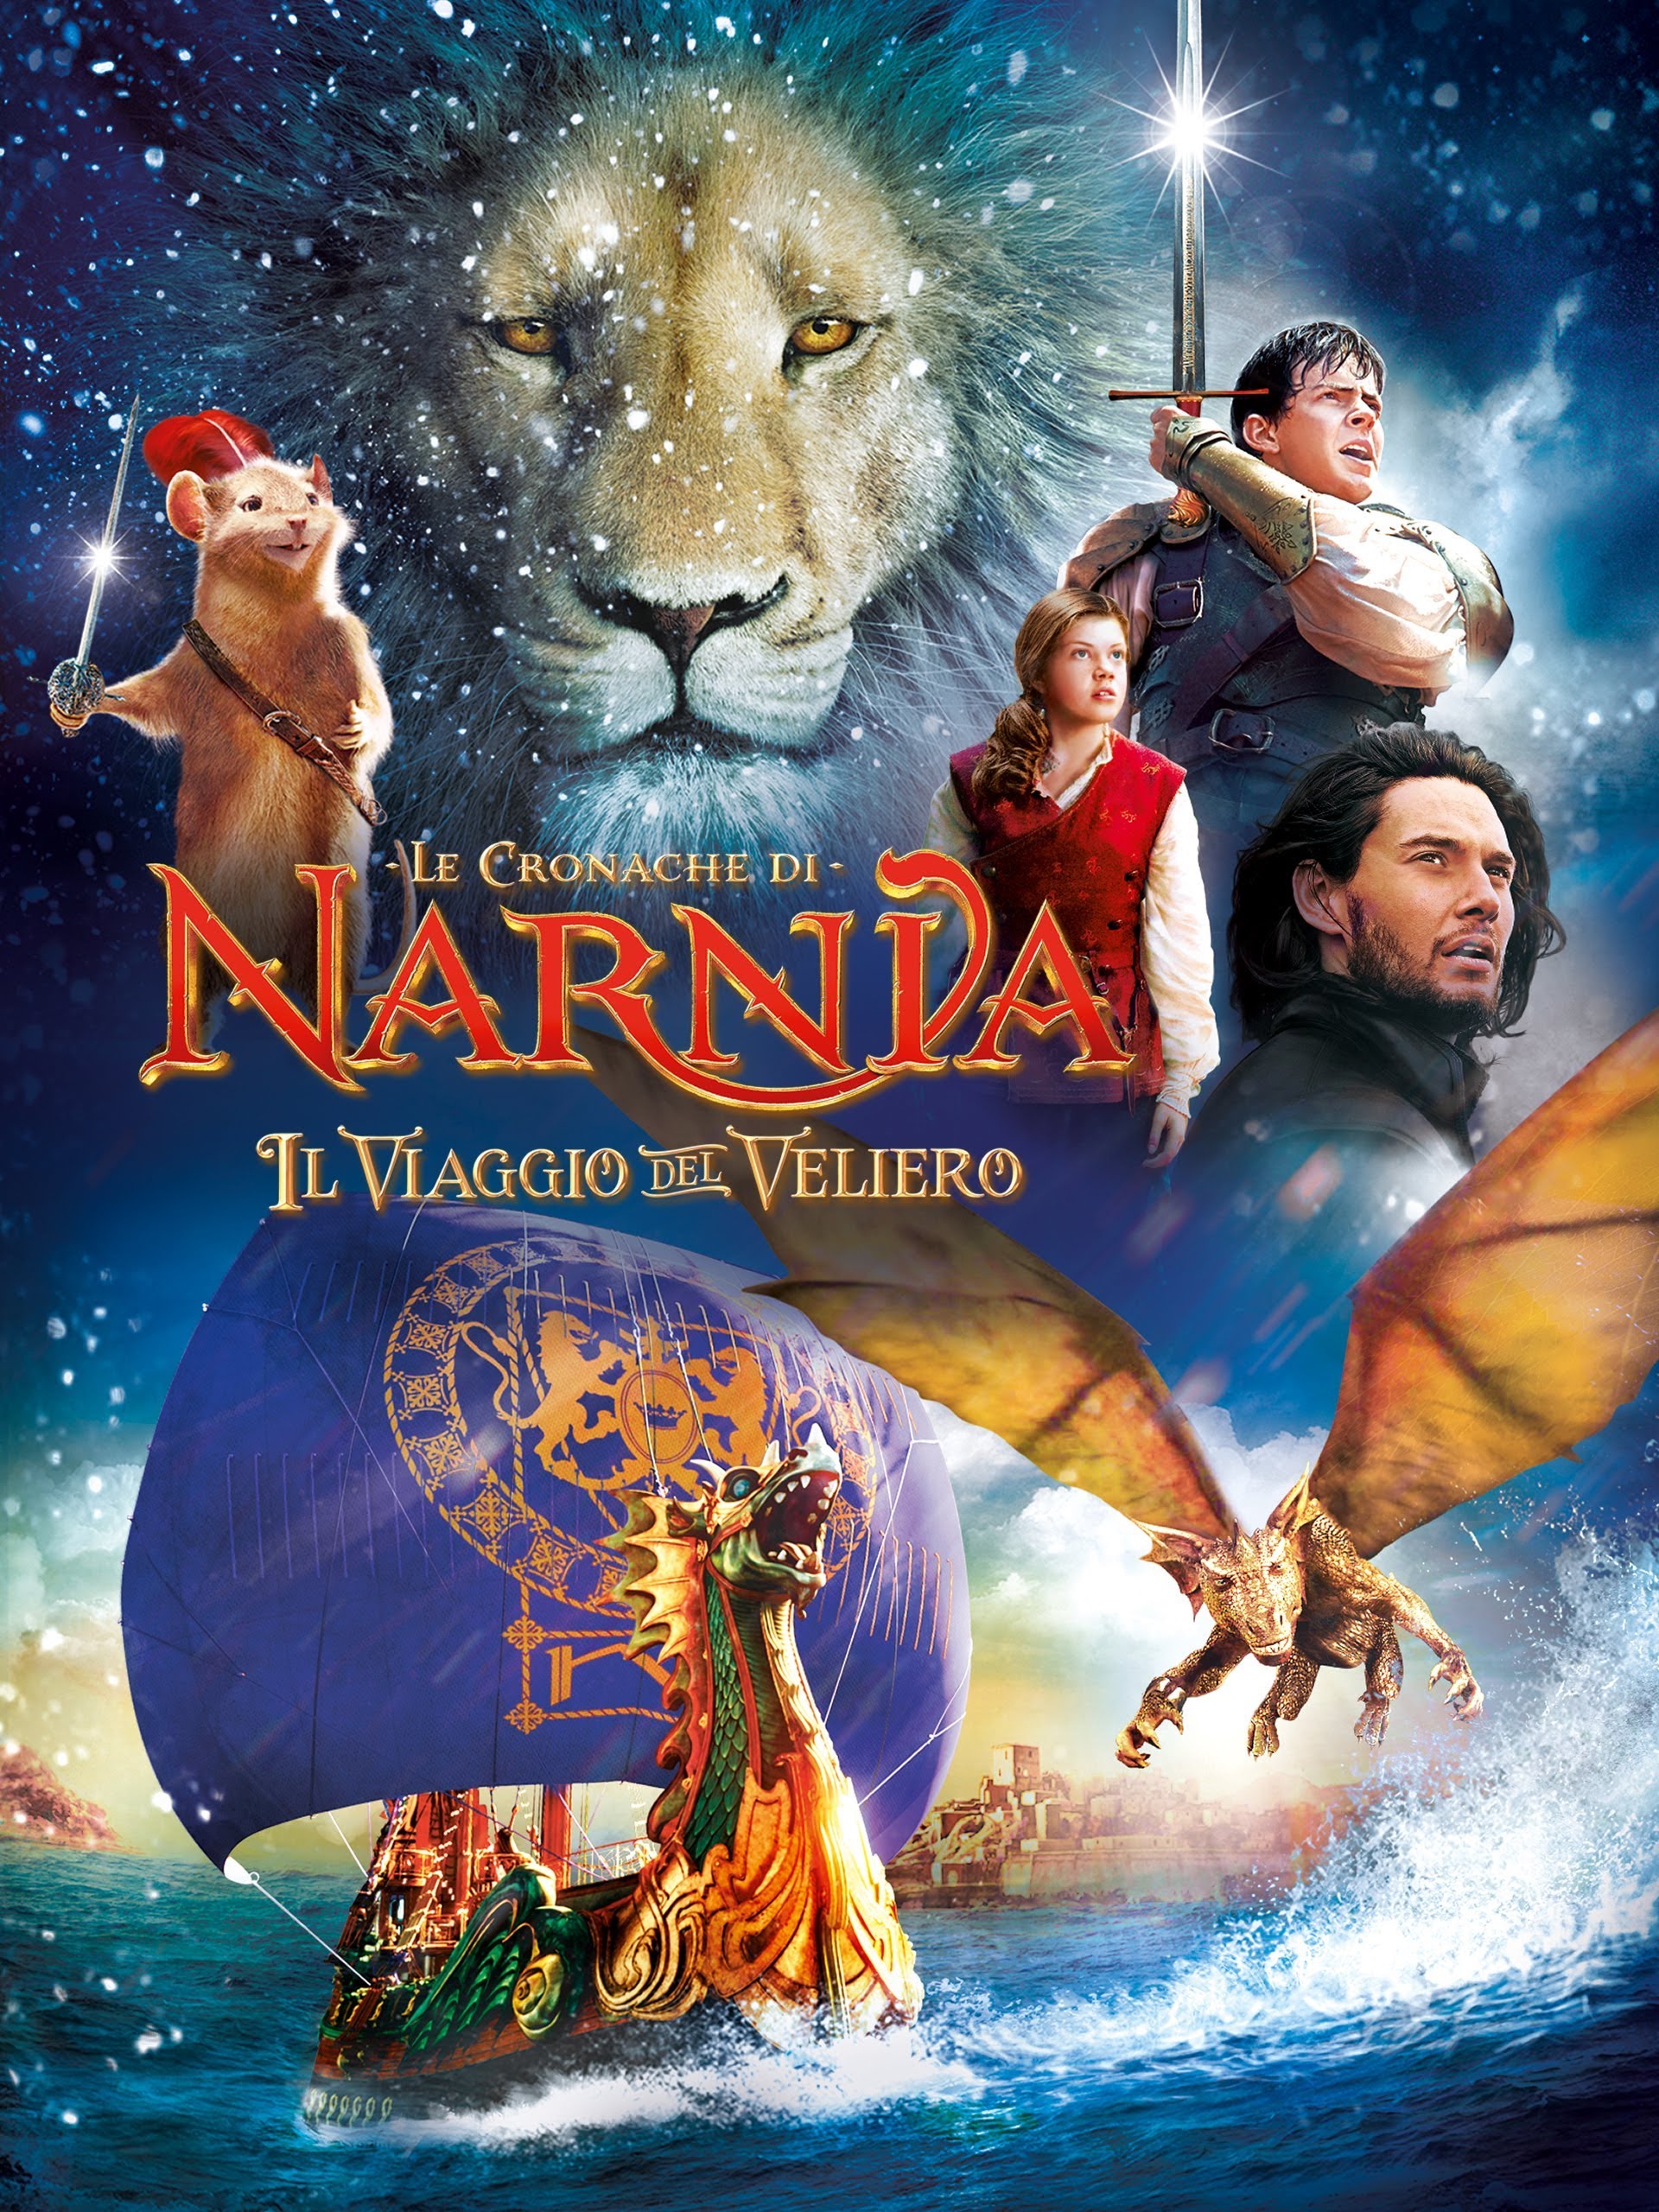 Le cronache di Narnia – Il viaggio del veliero [HD] (2010)